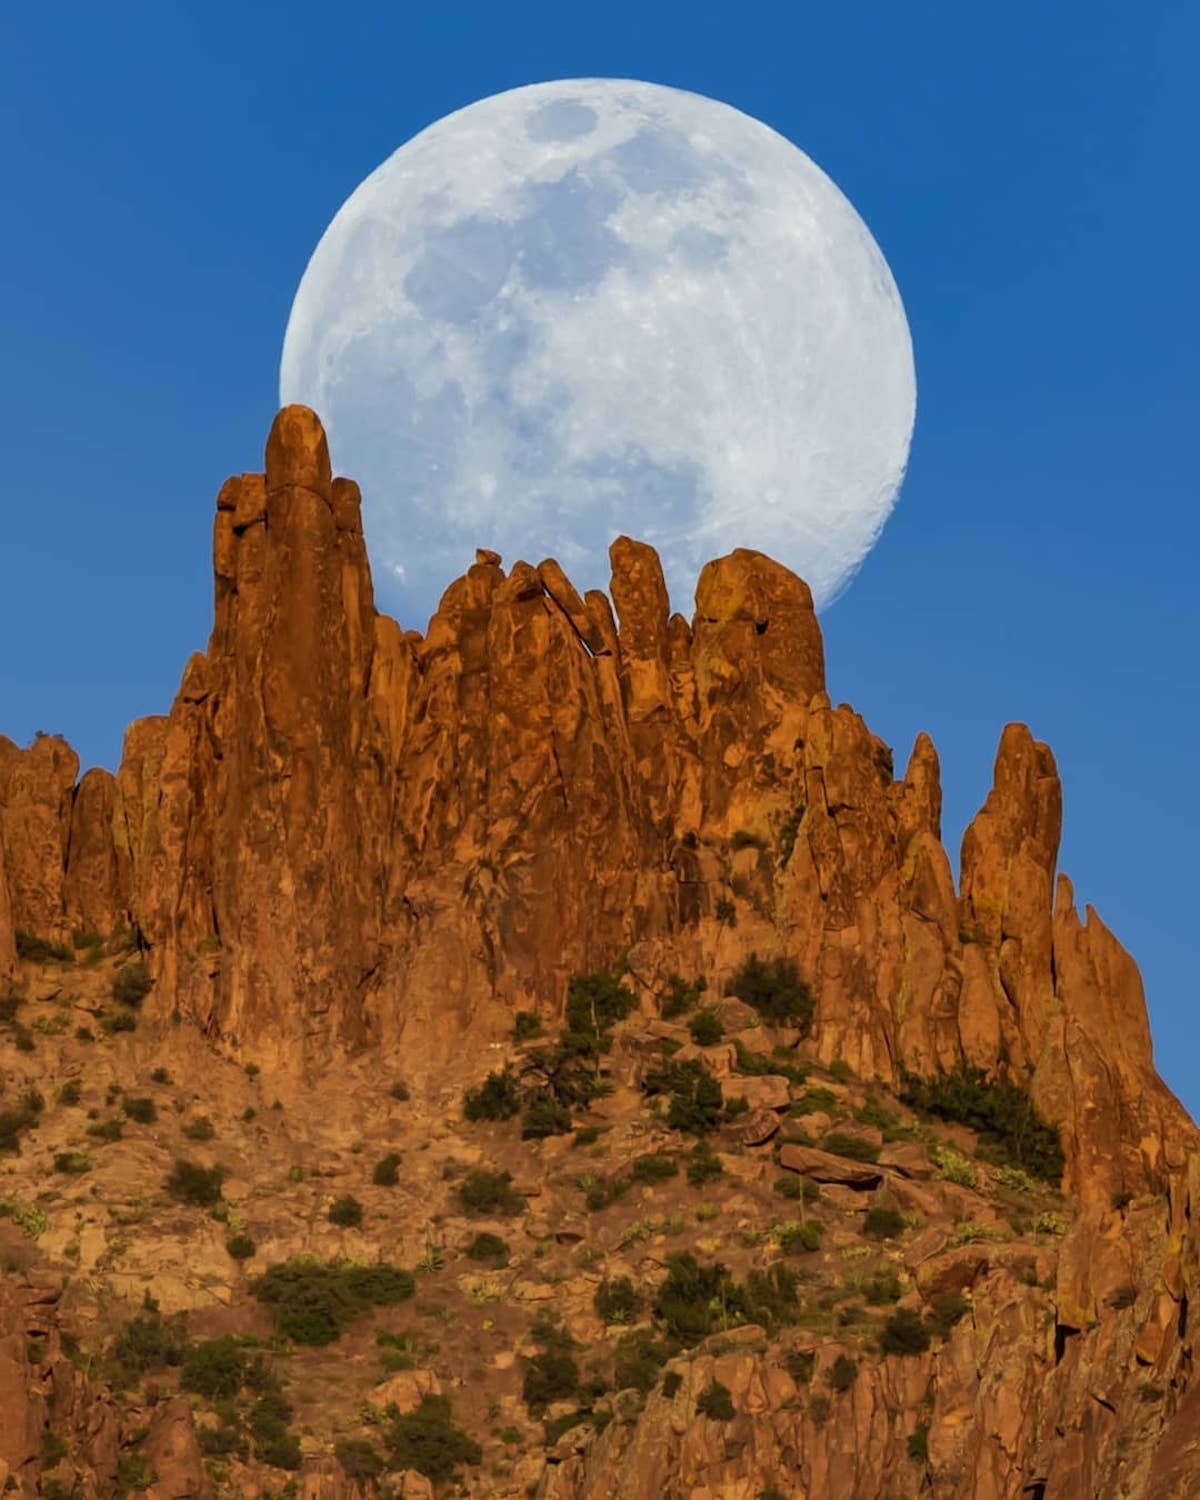 Hình ảnh siêu thực về mặt trăng khổng lồ trong sa mạc - Ảnh 5.